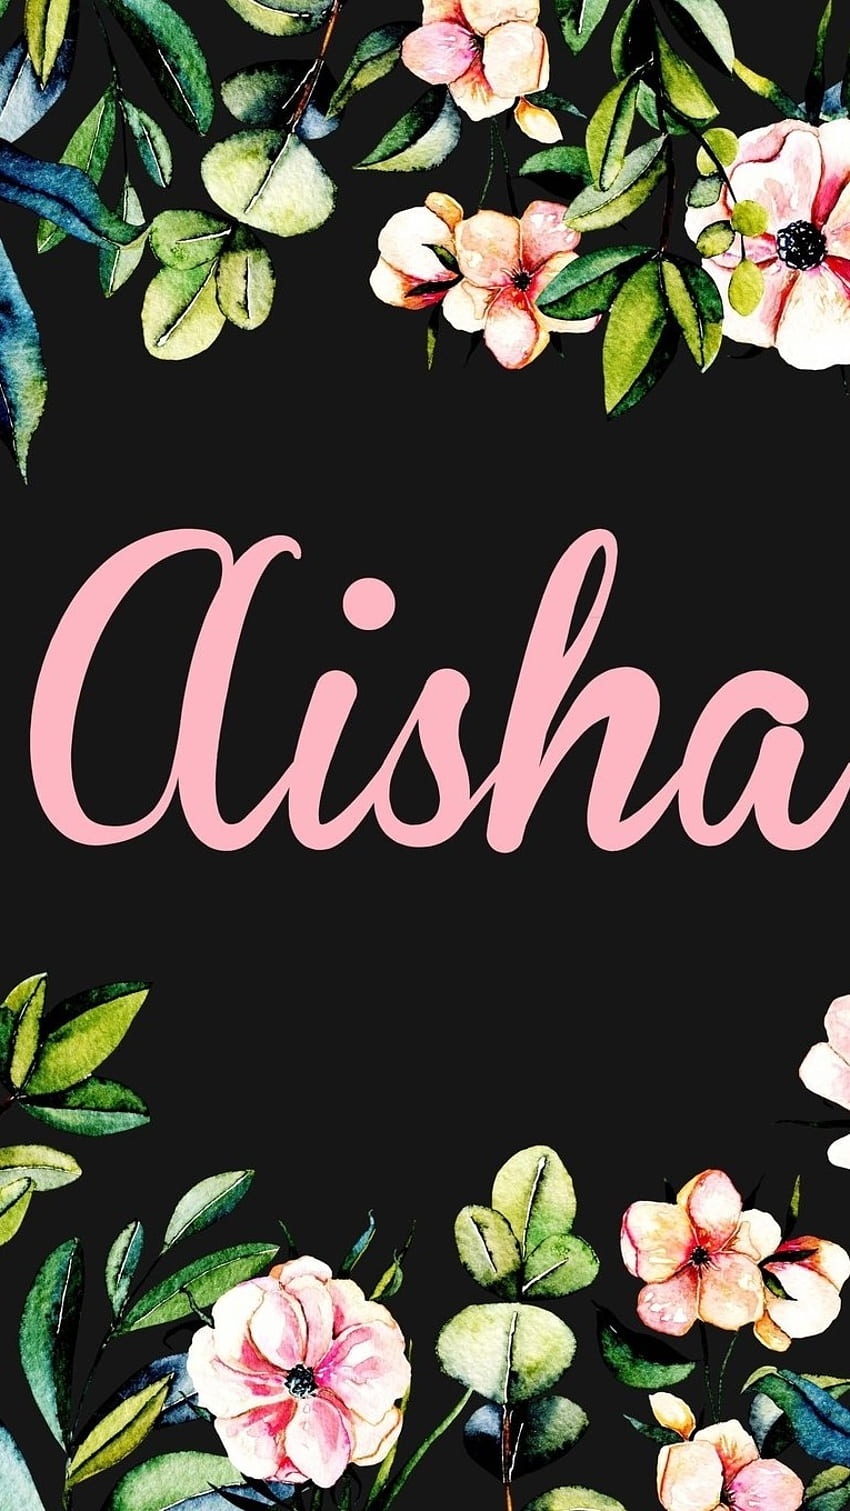 aisha name wallpapers arabic